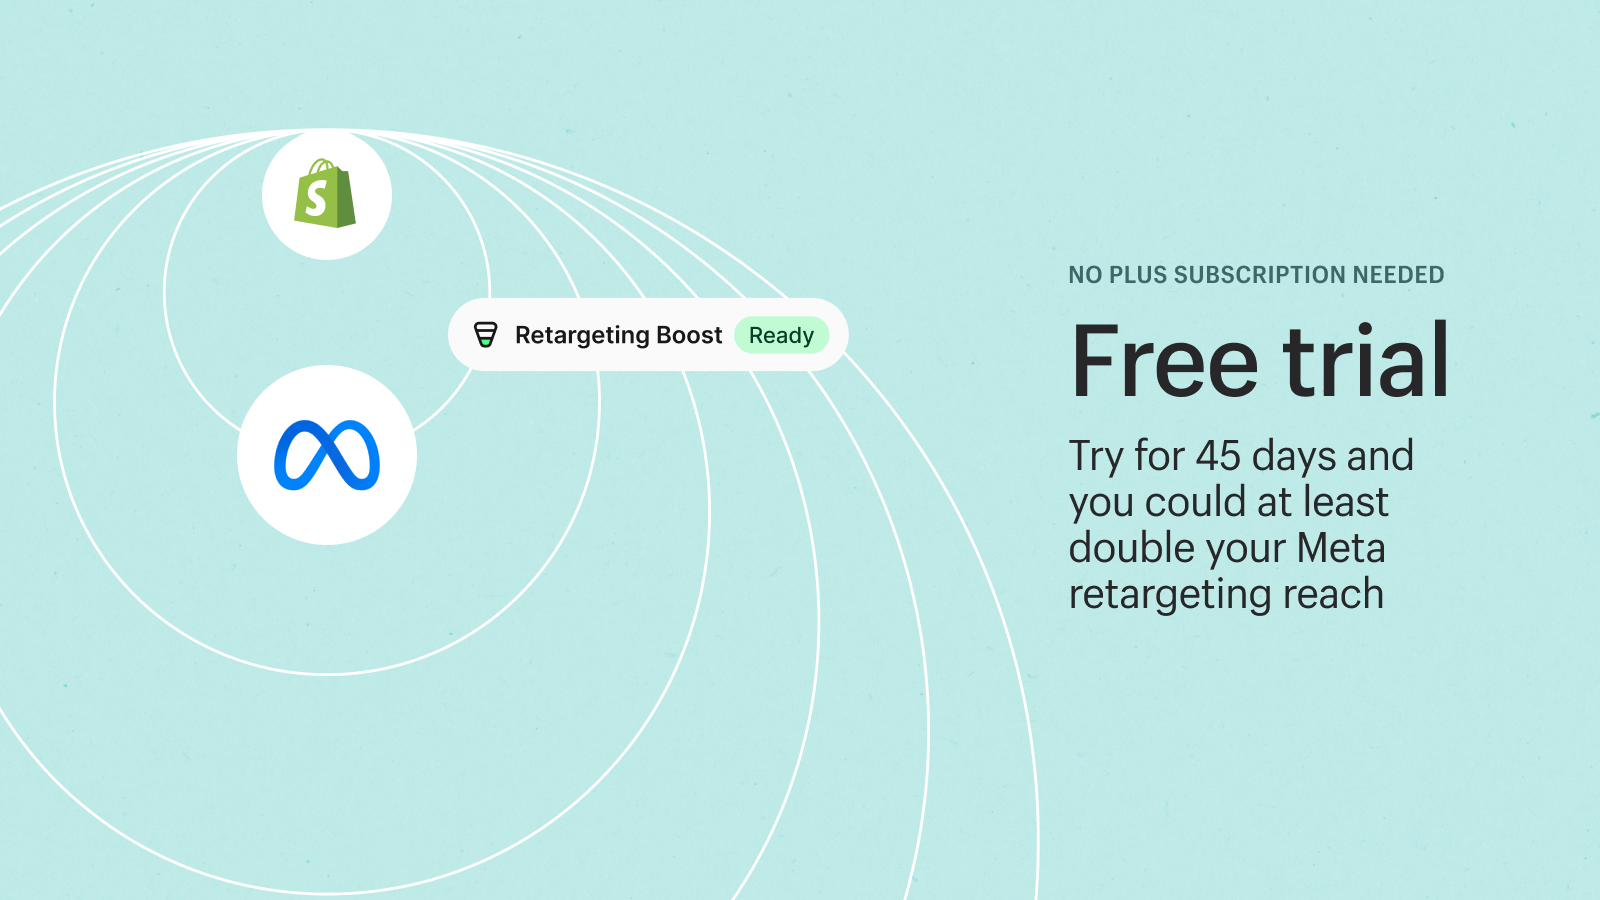 Prueba Shopify Audiences gratis durante 45 días - Plan Plus no requerido